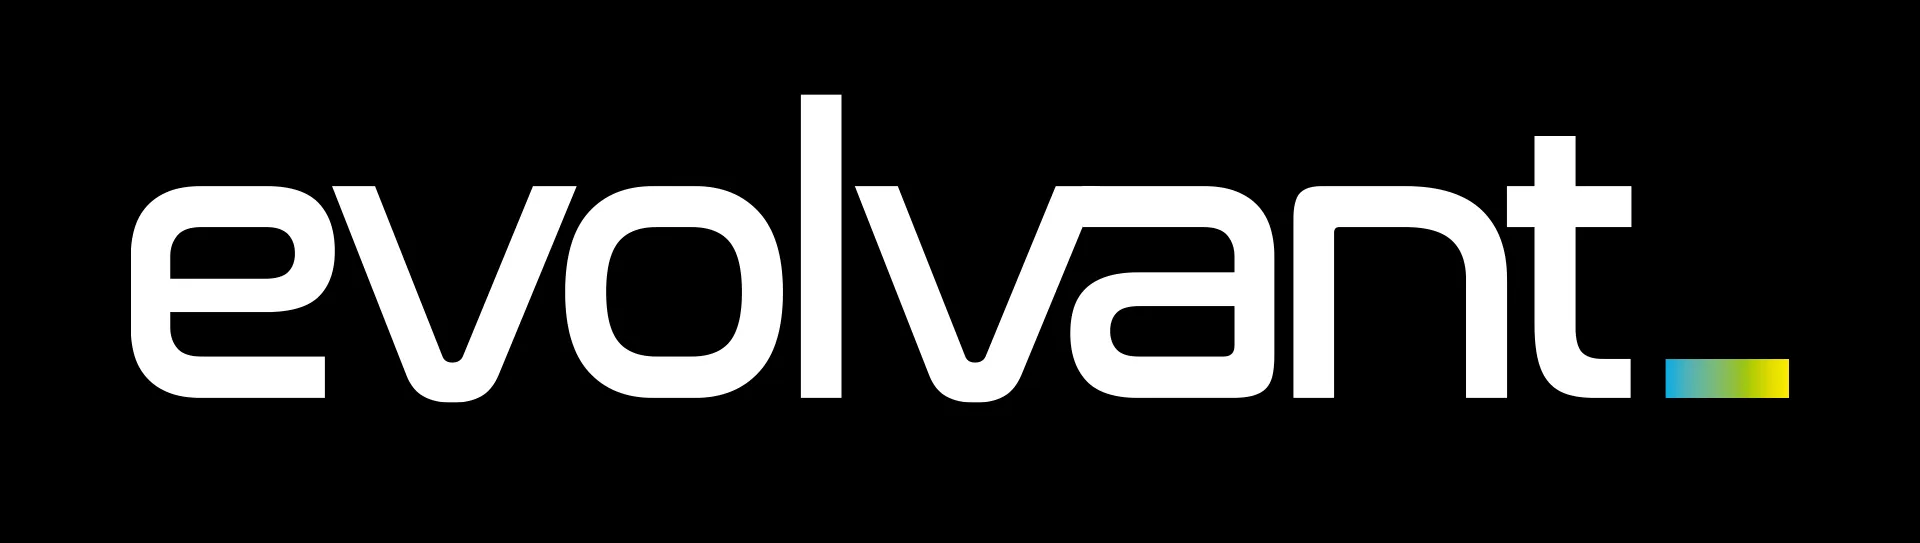 evolvant-Brand-Husl-logo4